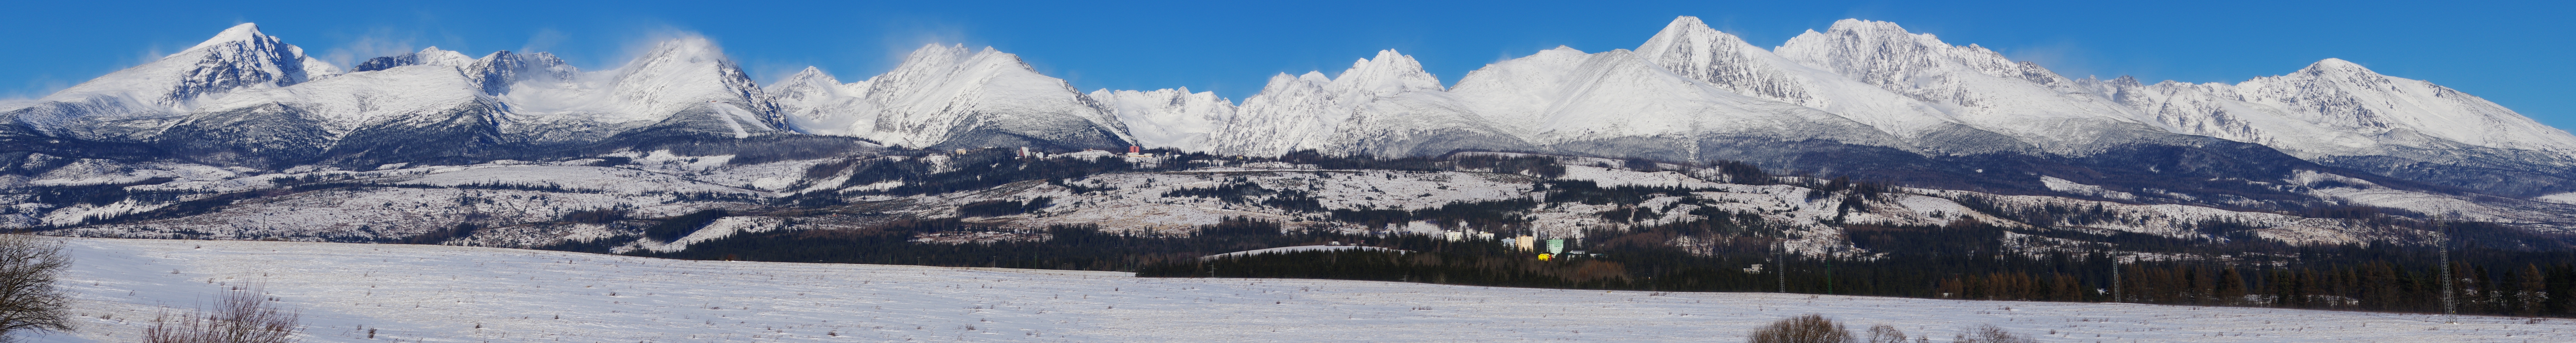 High_Tatras_Panorama